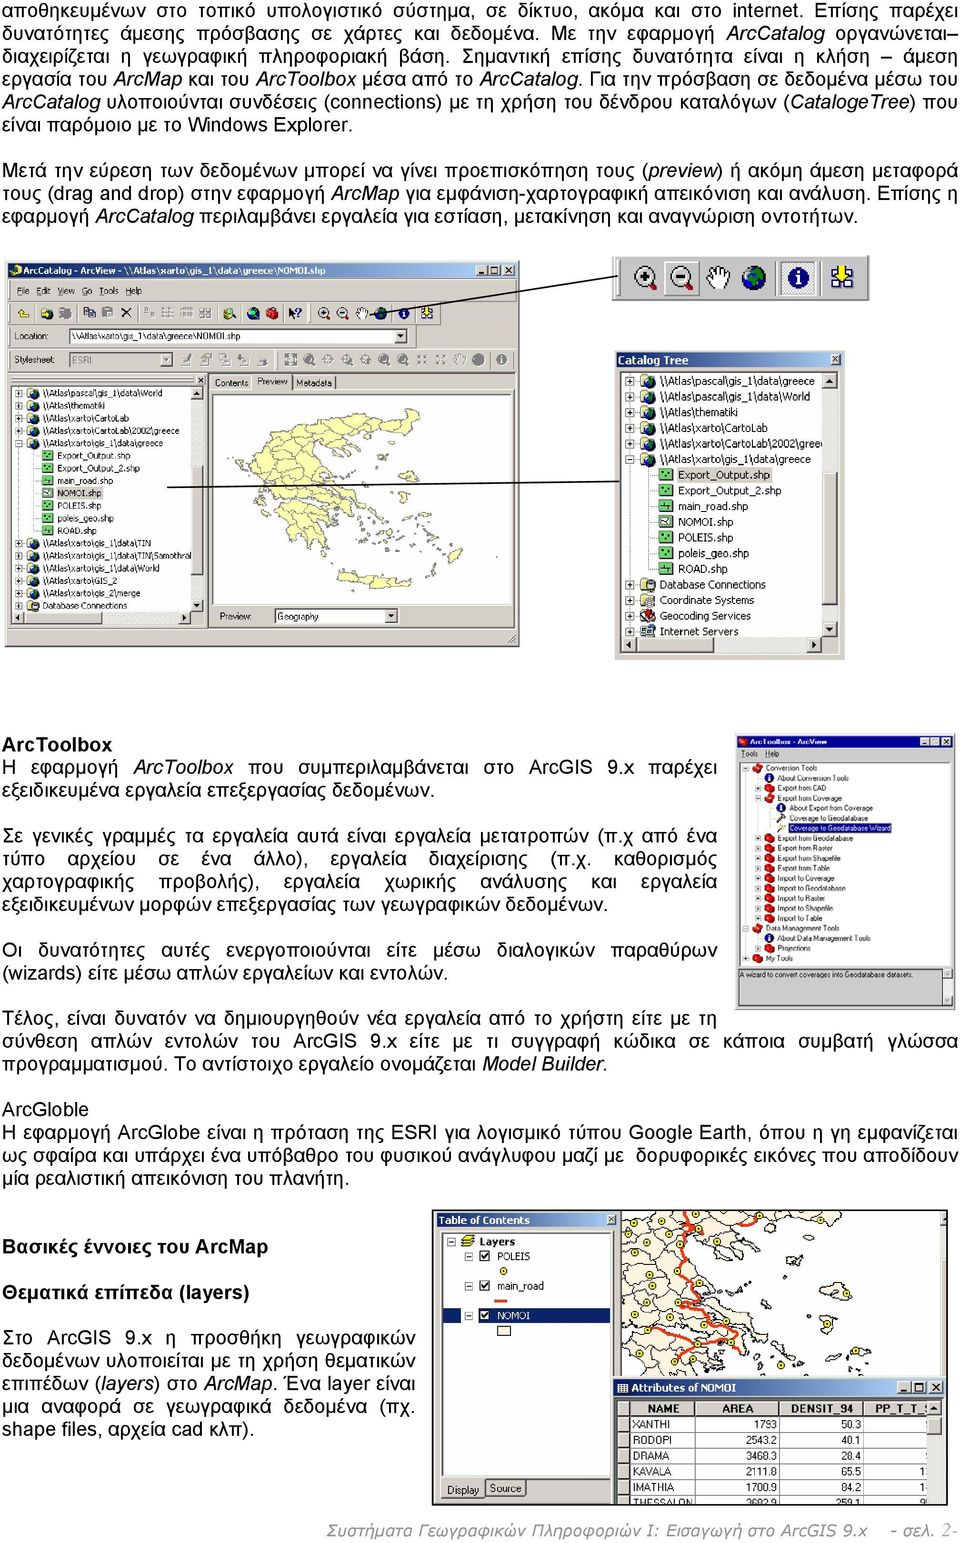 Για την πρόσβαση σε δεδομένα μέσω του ArcCatalog υλοποιούνται συνδέσεις (connections) με τη χρήση του δένδρου καταλόγων (CatalogeTree) που είναι παρόμοιο με το Windows Explorer.